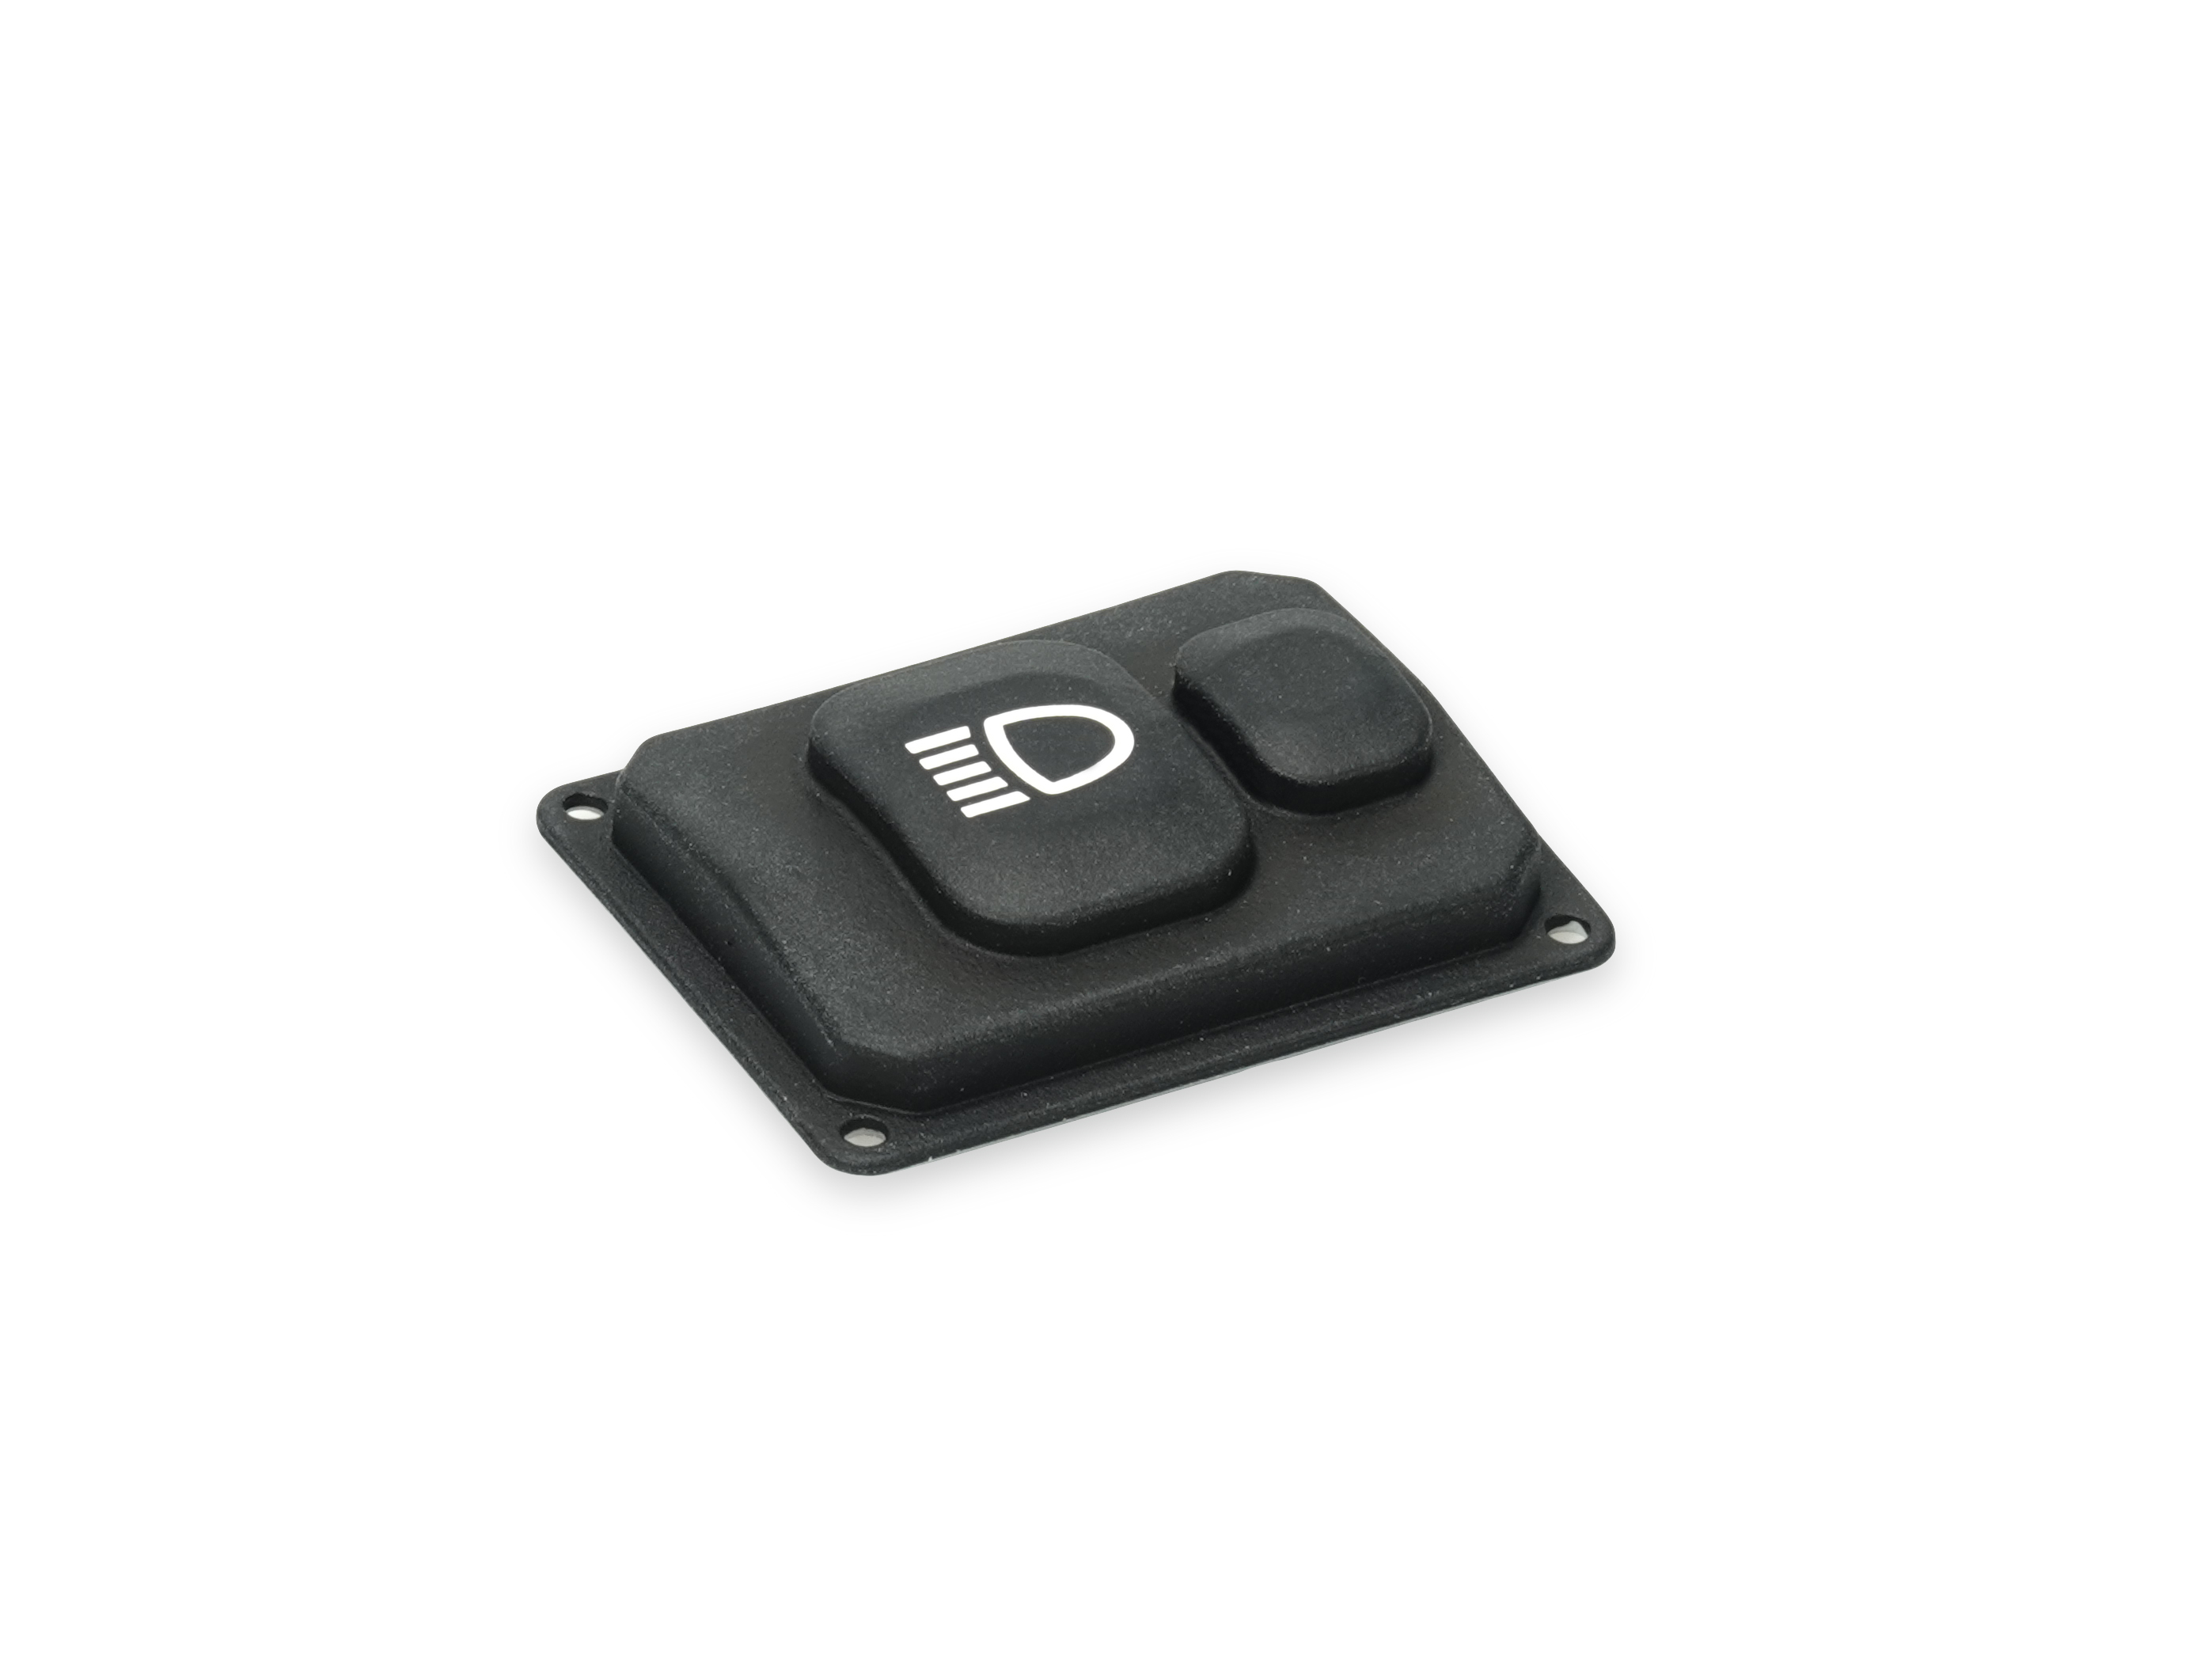 Silicone button for SL remote control